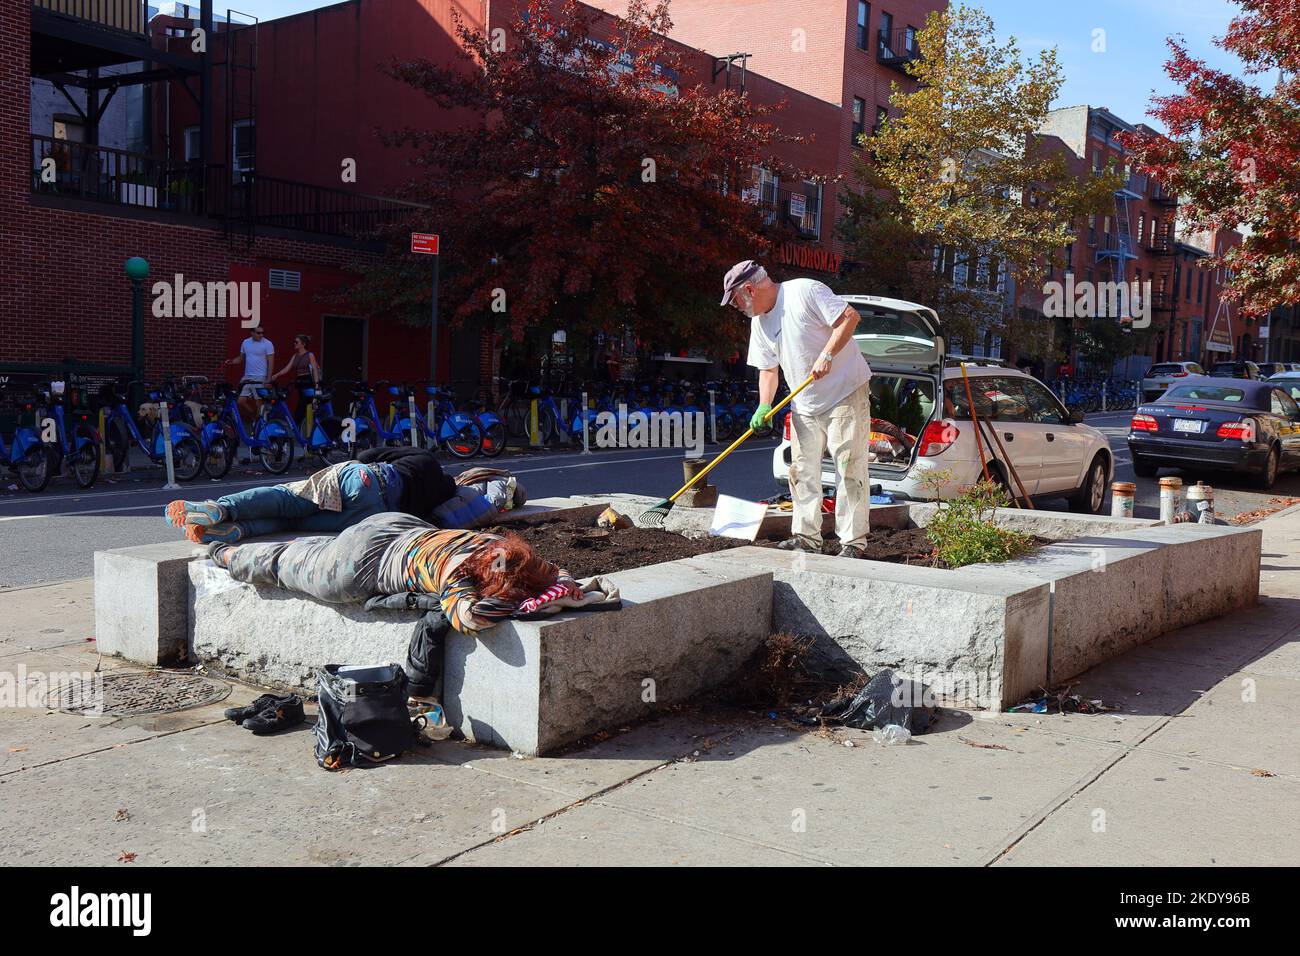 Un jardinier a tendance à un jardinier avec plusieurs personnes qui dorment dessus, dans une rue de Cobble Hill, Brooklyn, New York. Banque D'Images